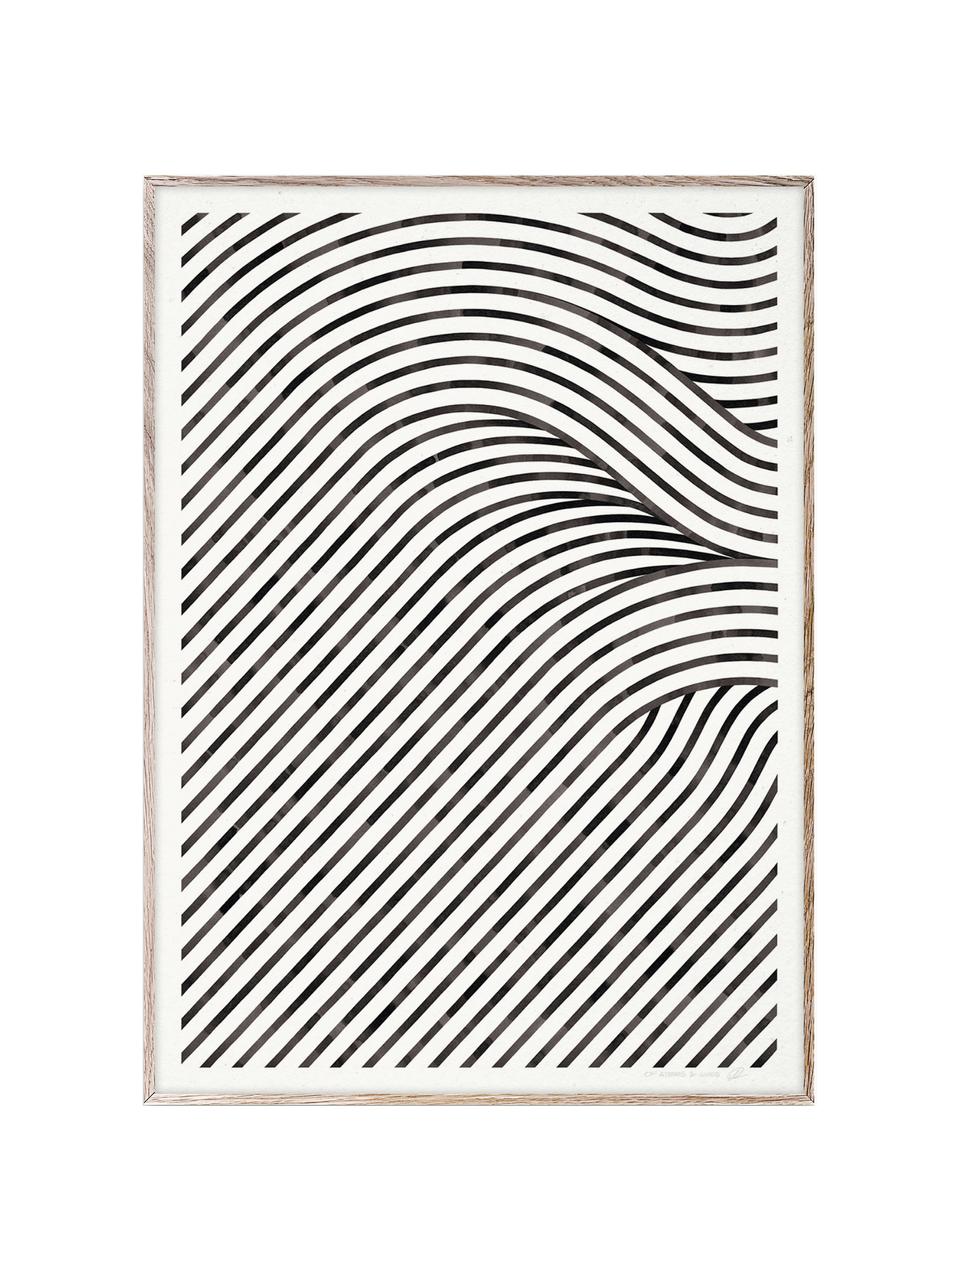 Plakát Quantum Fields 02, 210g matný papír Hahnemühle, digitální tisk s 10 barvami odolnými vůči UV záření, Bílá, černá, Š 30 cm, V 40 cm